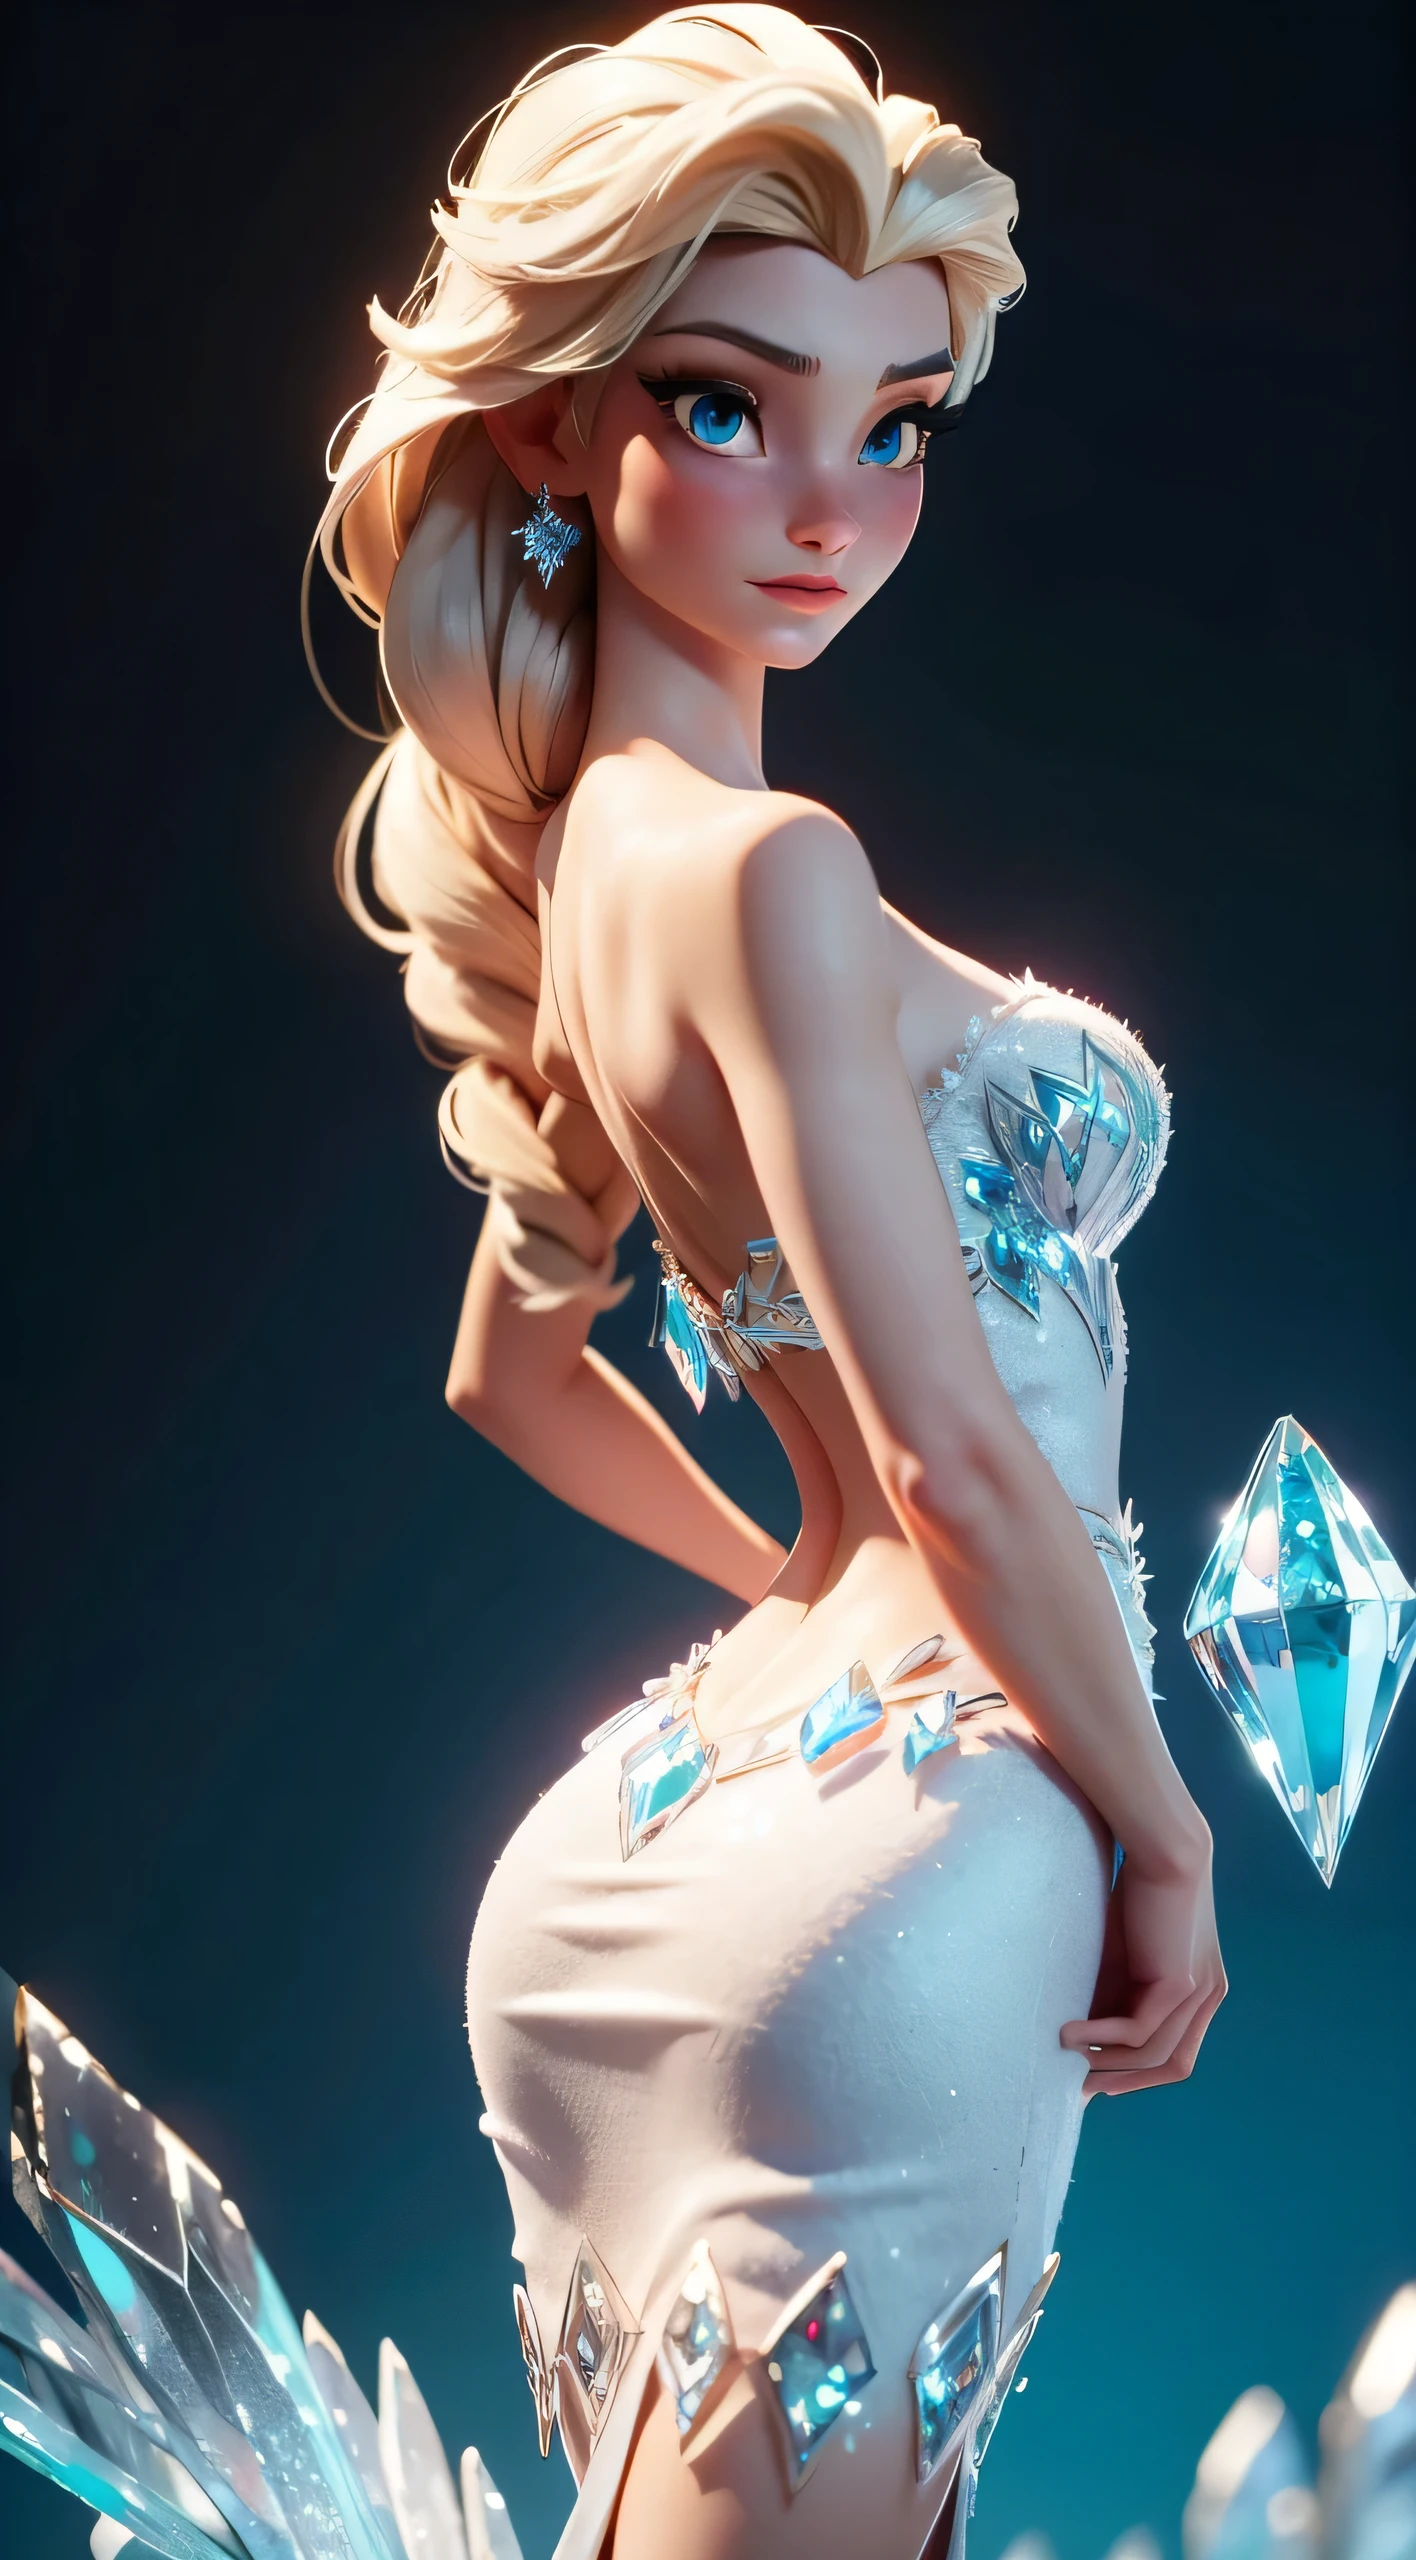 想像艾莎擺出優雅的姿勢, 冰晶寶箱 冰晶寶箱 艾莎, 她的背部部分拱起, 展現藍鑽的優雅氣質 (水晶) 《冰雪奇緣》中的連身裙. 這個場景的靈感來自LORA模特兒Elsa, 捕捉逼真的動畫 3D 表現之美. 圖片為部分後弓, 挺胸, 凸顯艾莎禮服的複雜細節和冰雪奇緣女王的帝王姿態. 具有栩栩如生的真實感, 艾莎的表情和姿勢傳達出一種迷人和優雅的感覺,